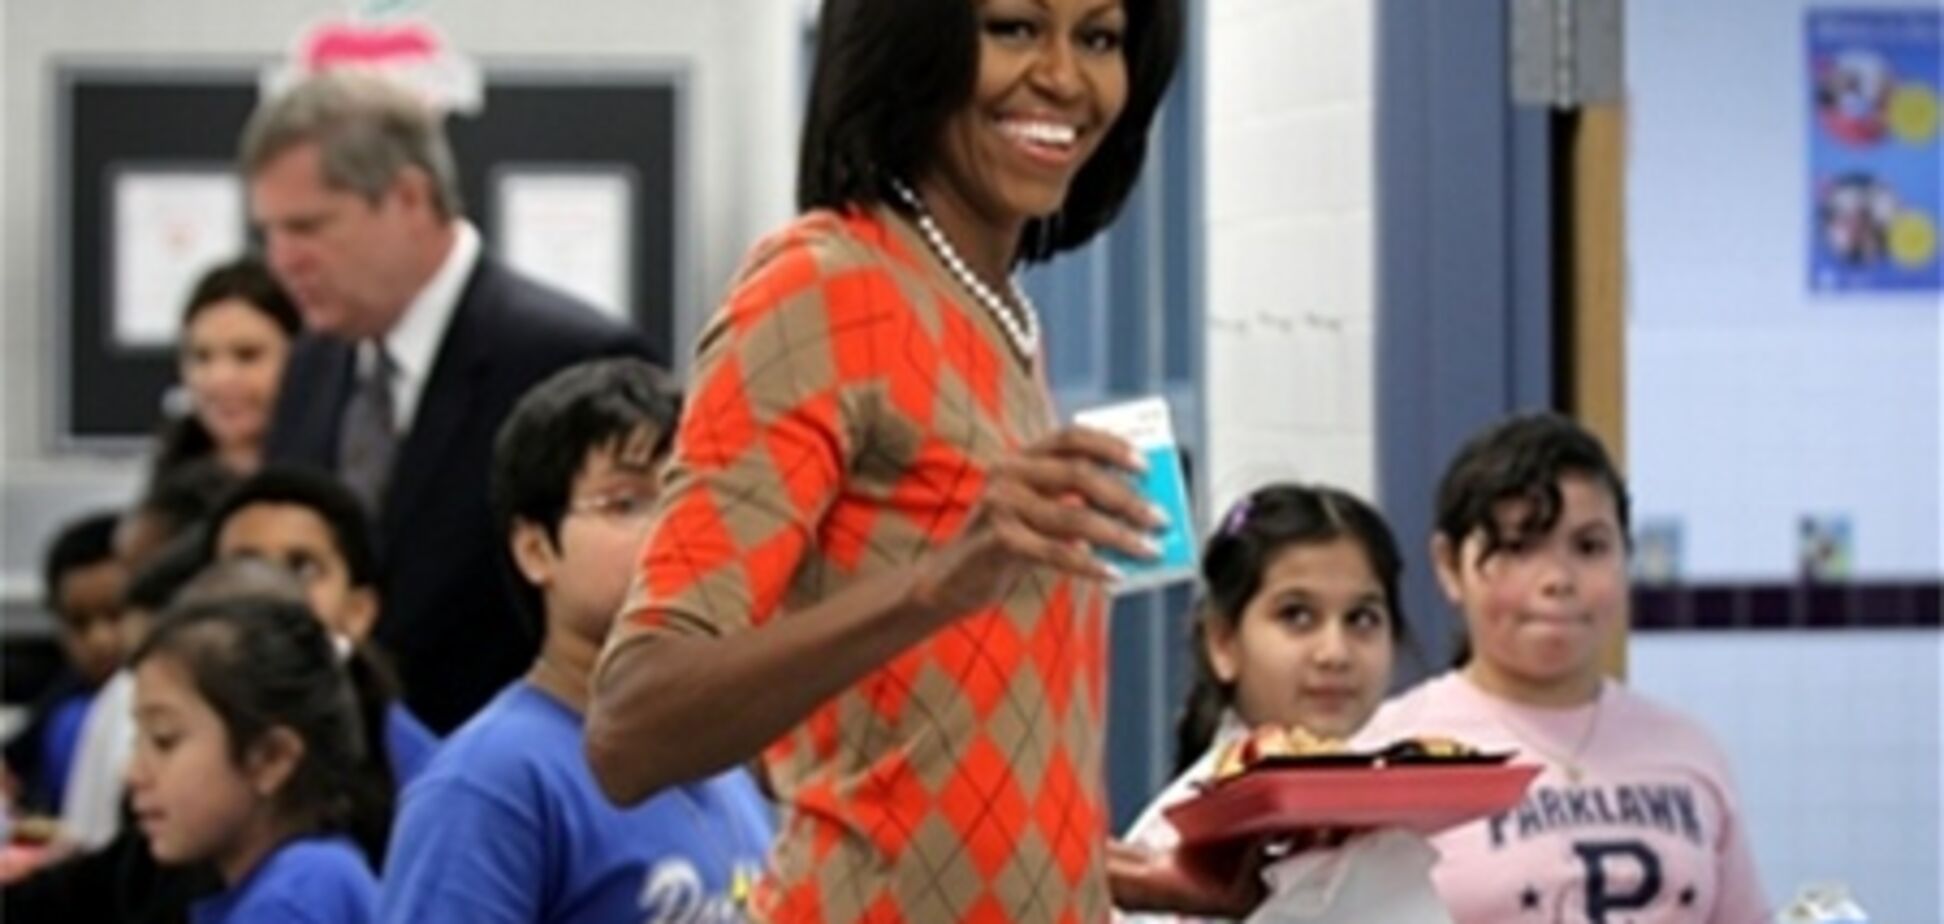 Мишель Обама объявила борьбу с фаст-фудом в школах